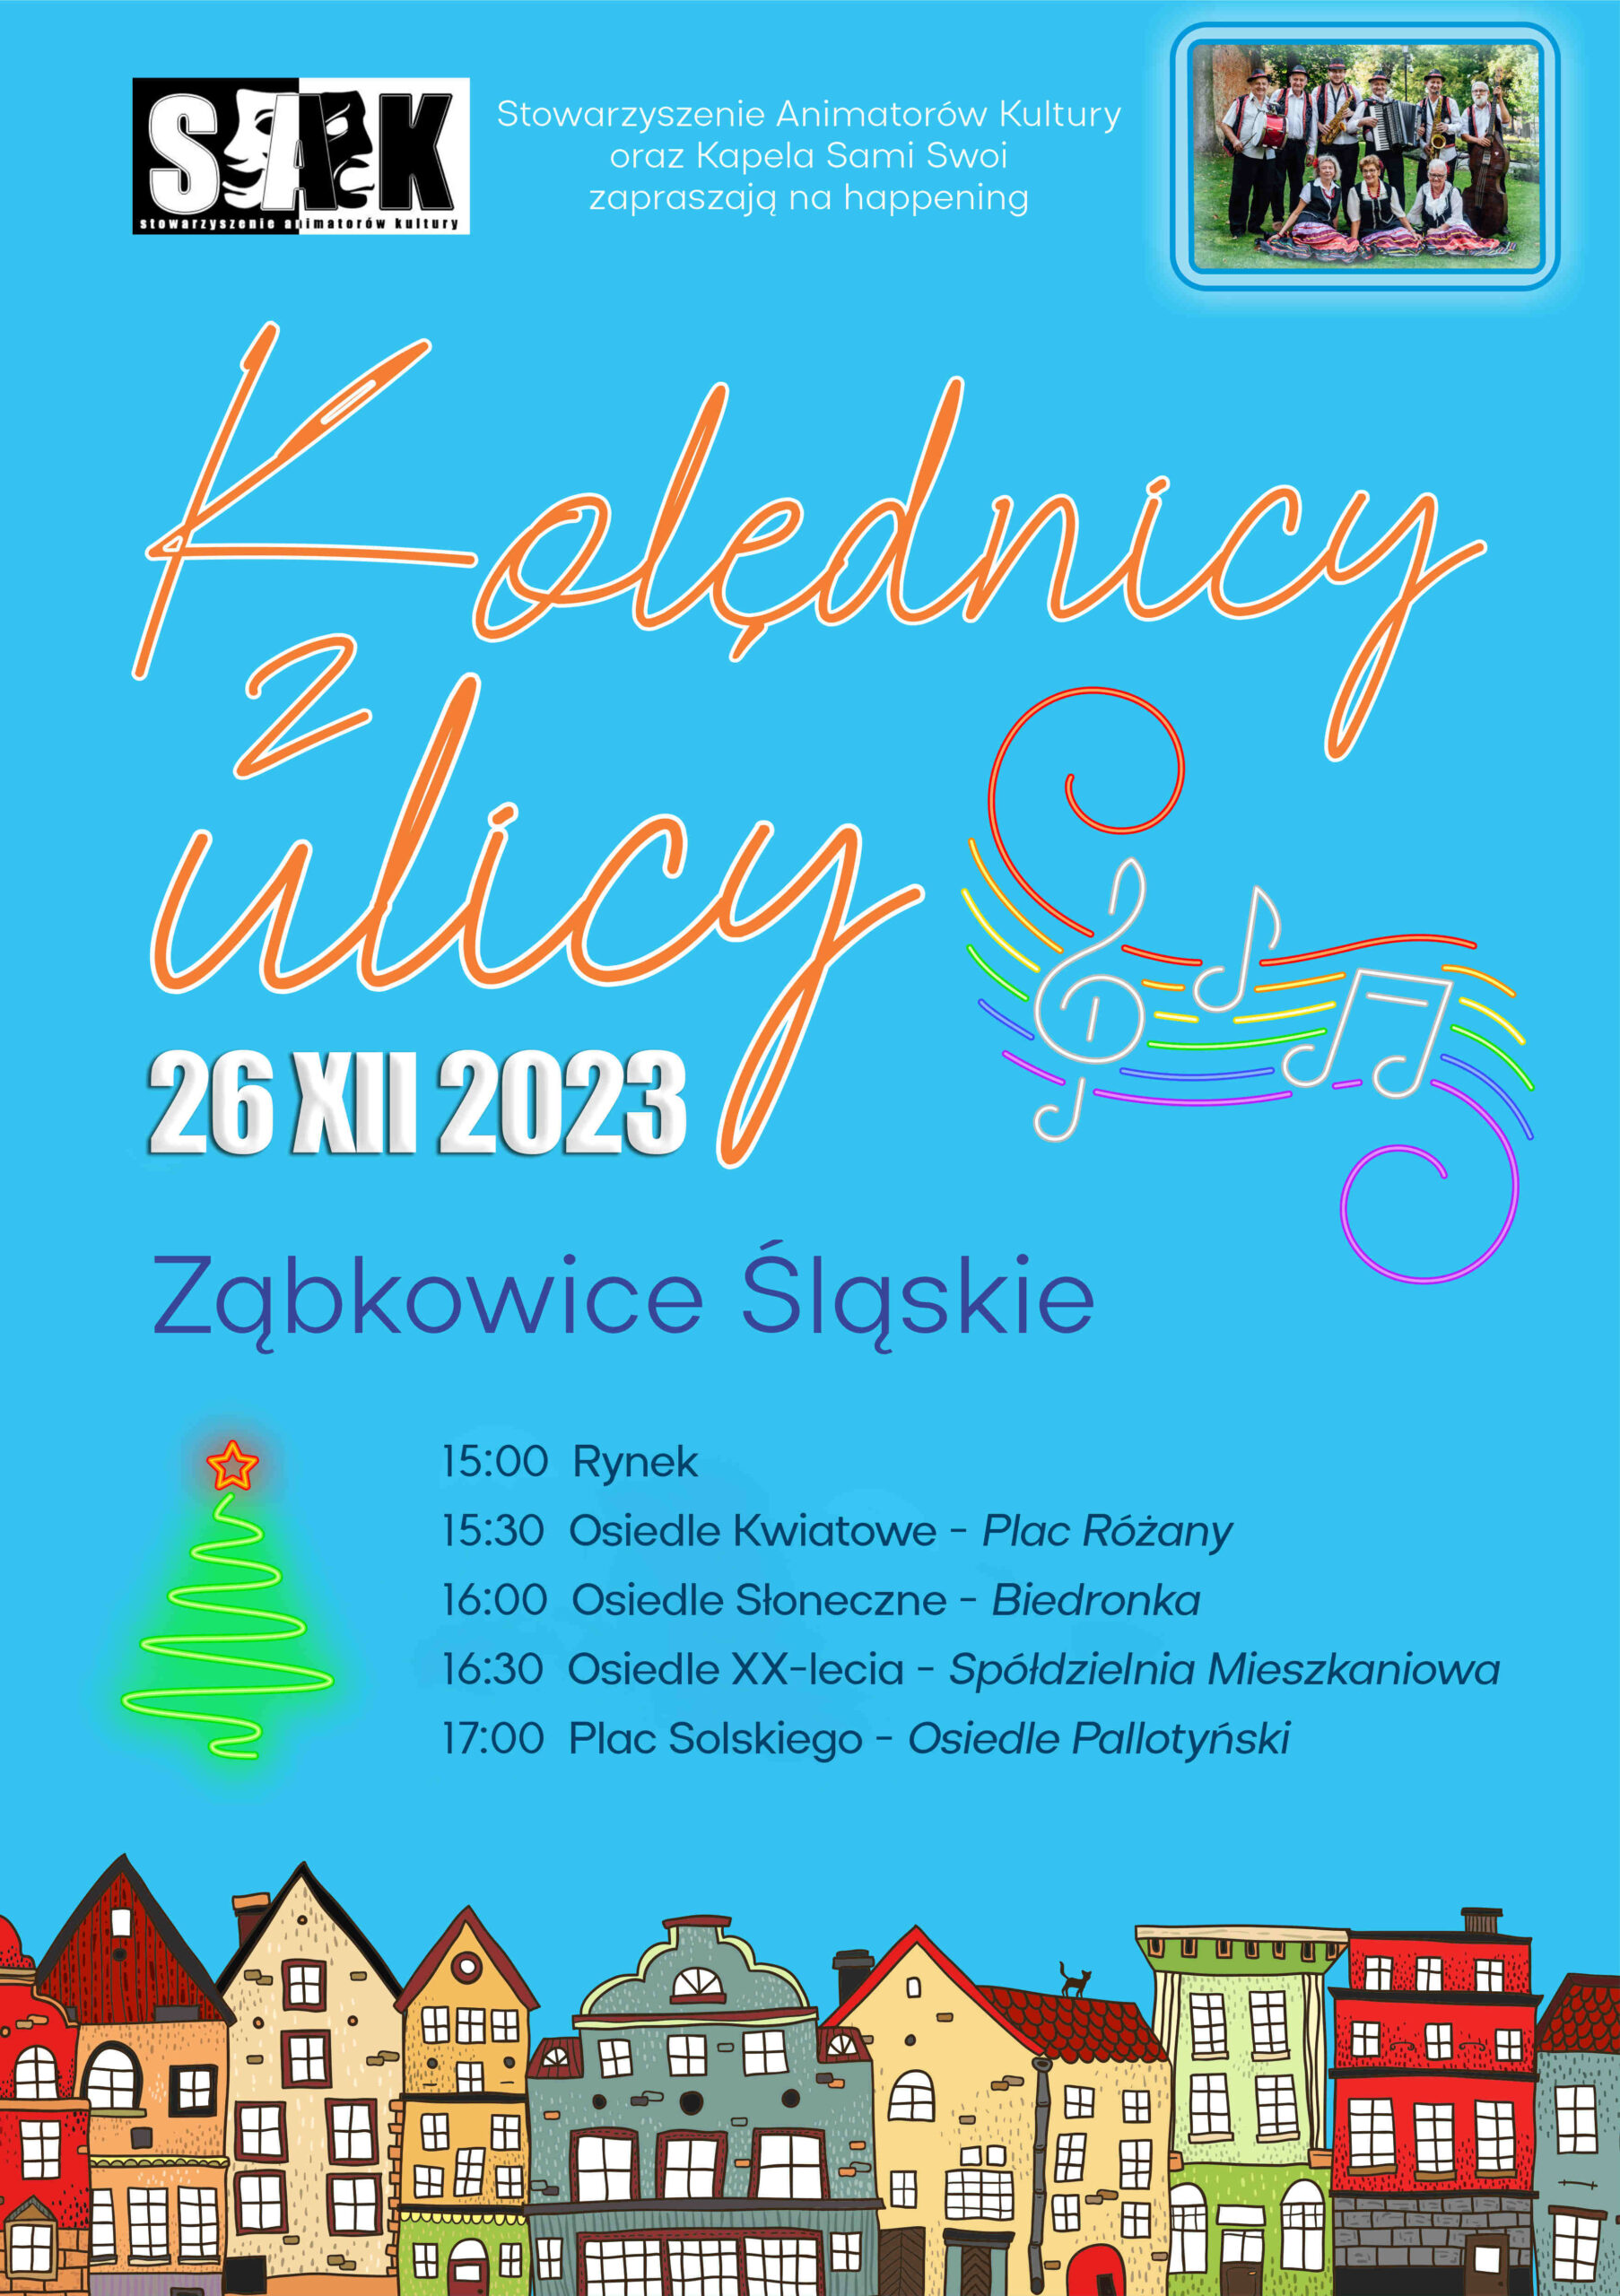 Plakat "Kolędnicy z ulicy" z rozpiską godzin i miejsc w Ząbkowicach Śląskich na niebieskim tle, na dole narysowane, kolorowe domki.